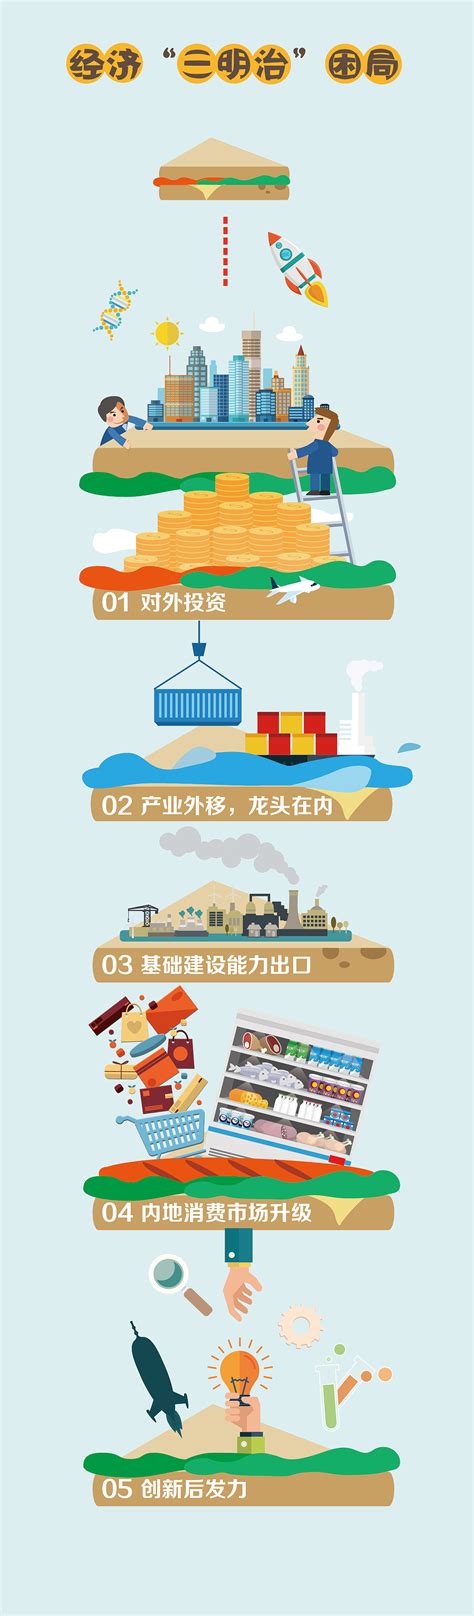 上海信息化商务服务哪家好 诚信经营「重庆中宏文化传播供应」 - 数字营销企业